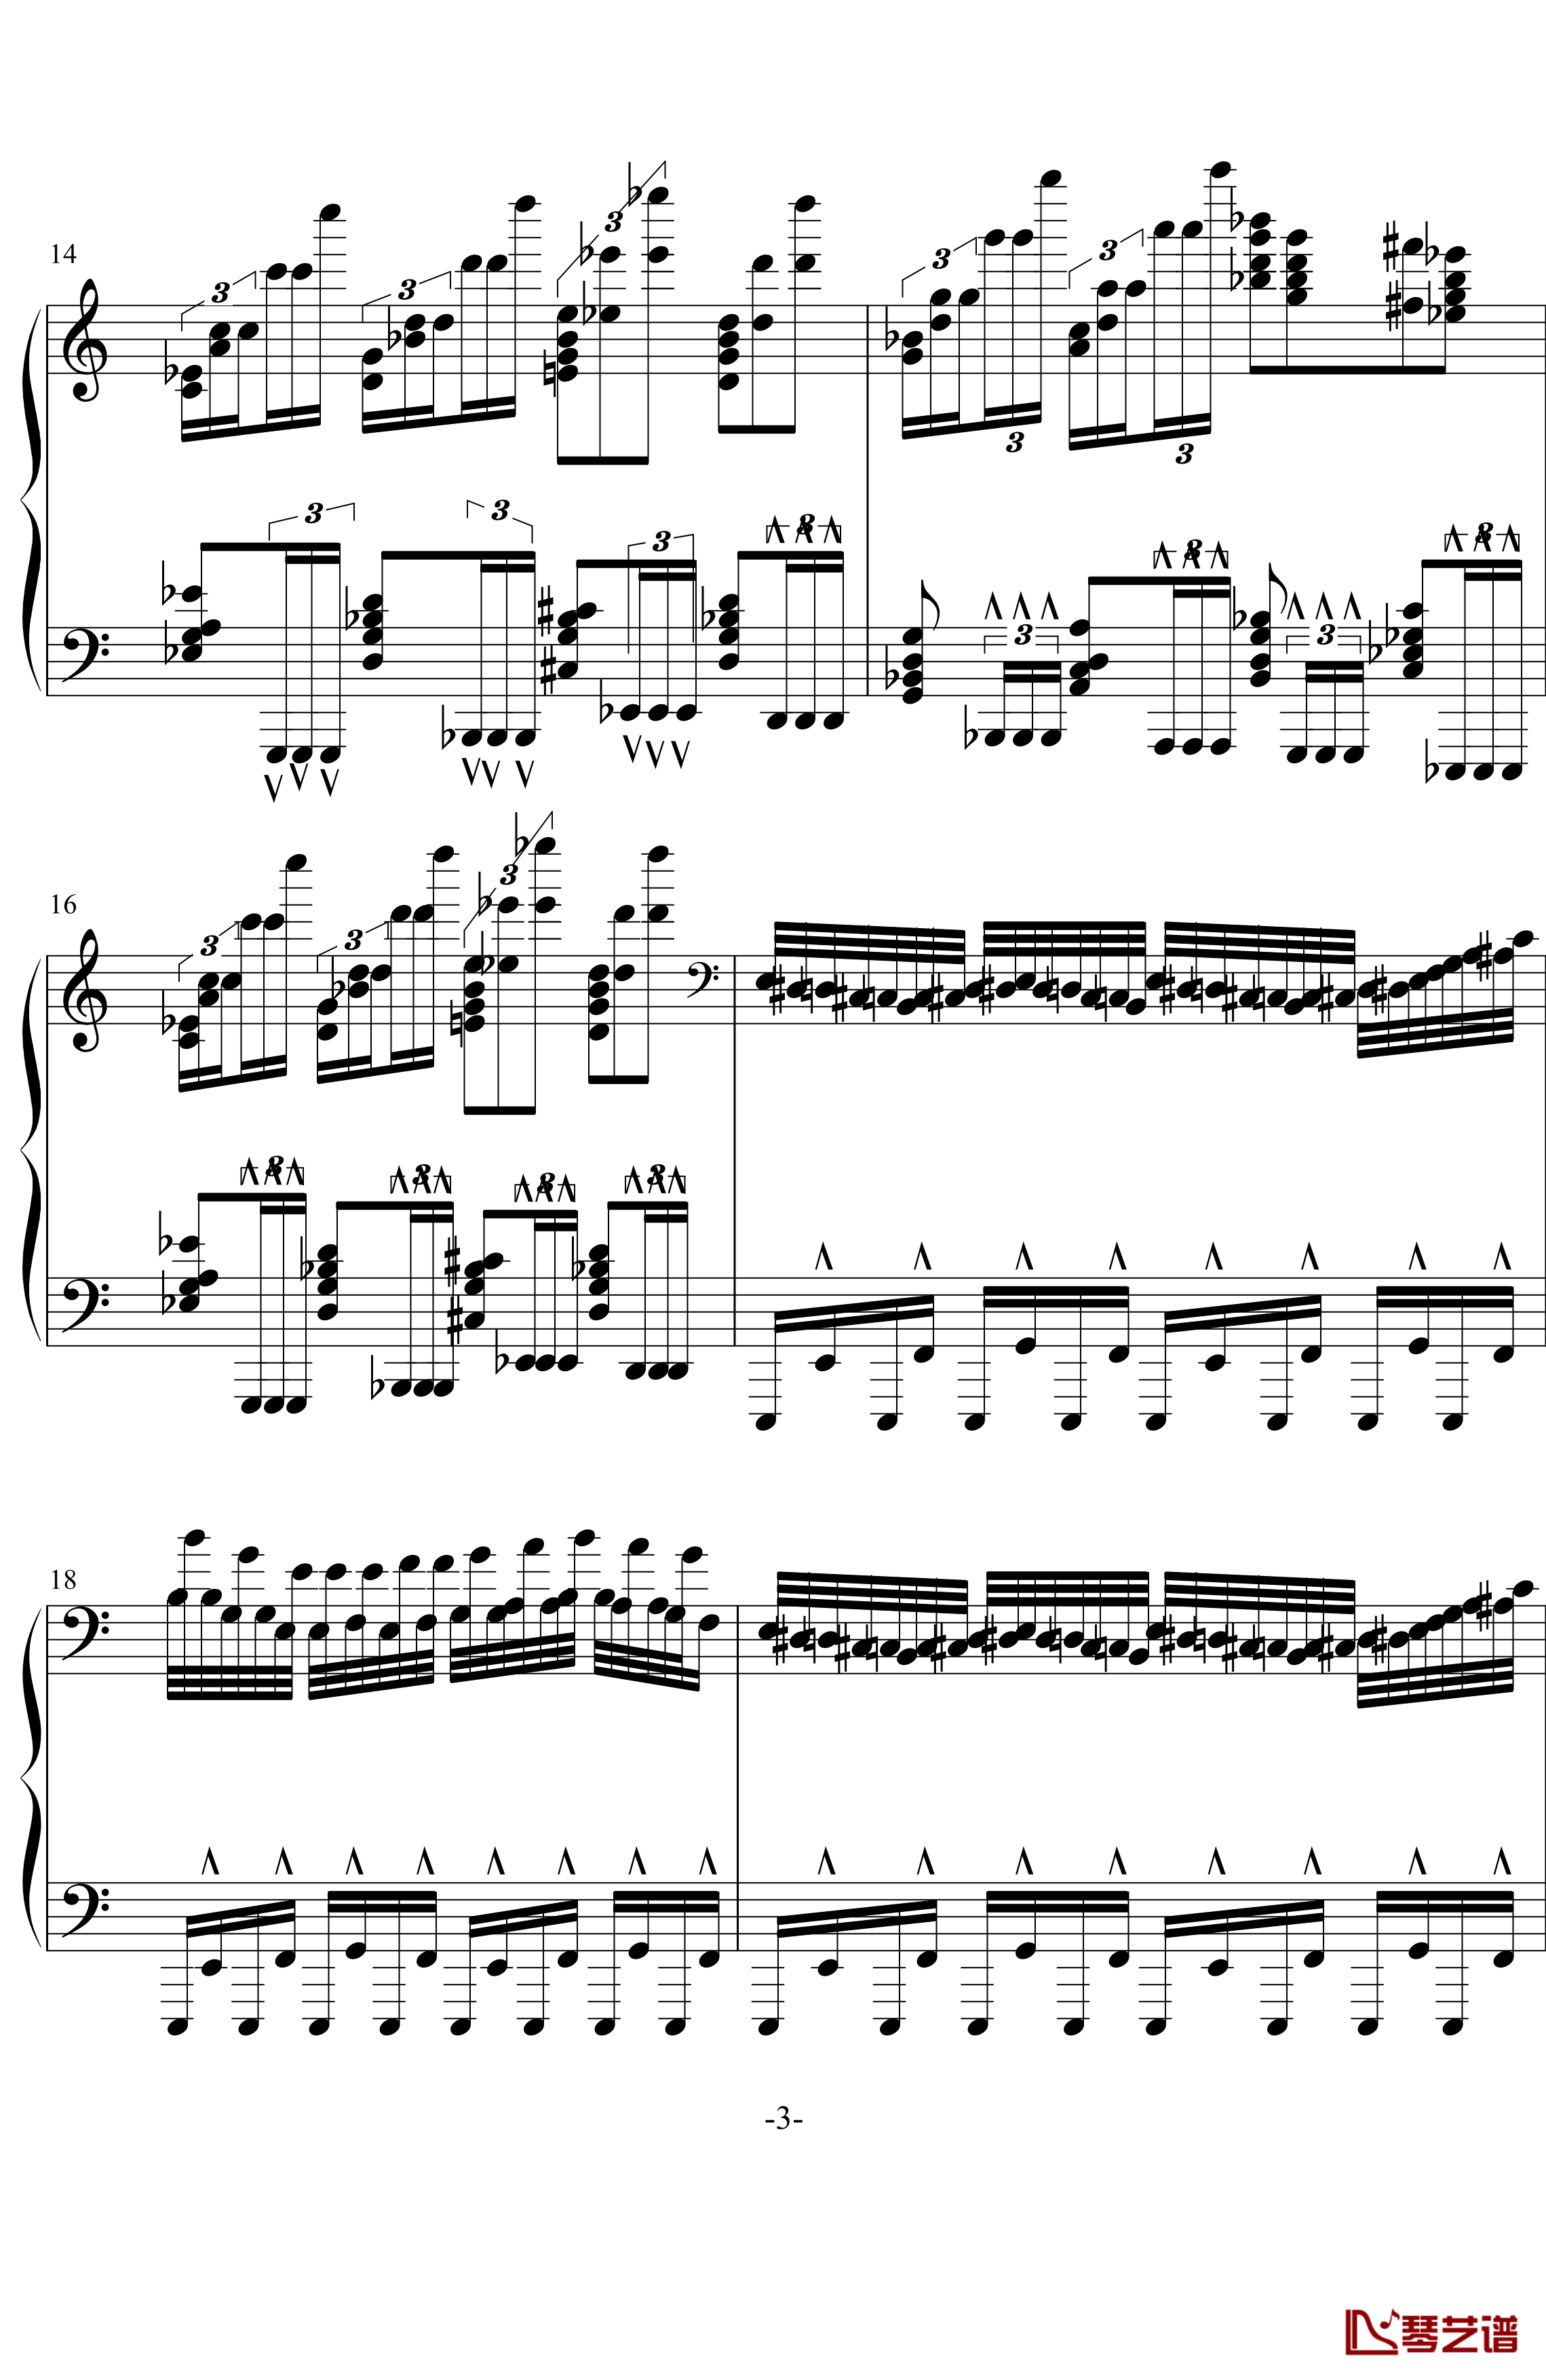 龙卷风钢琴谱-超级练习曲-wang5549034413